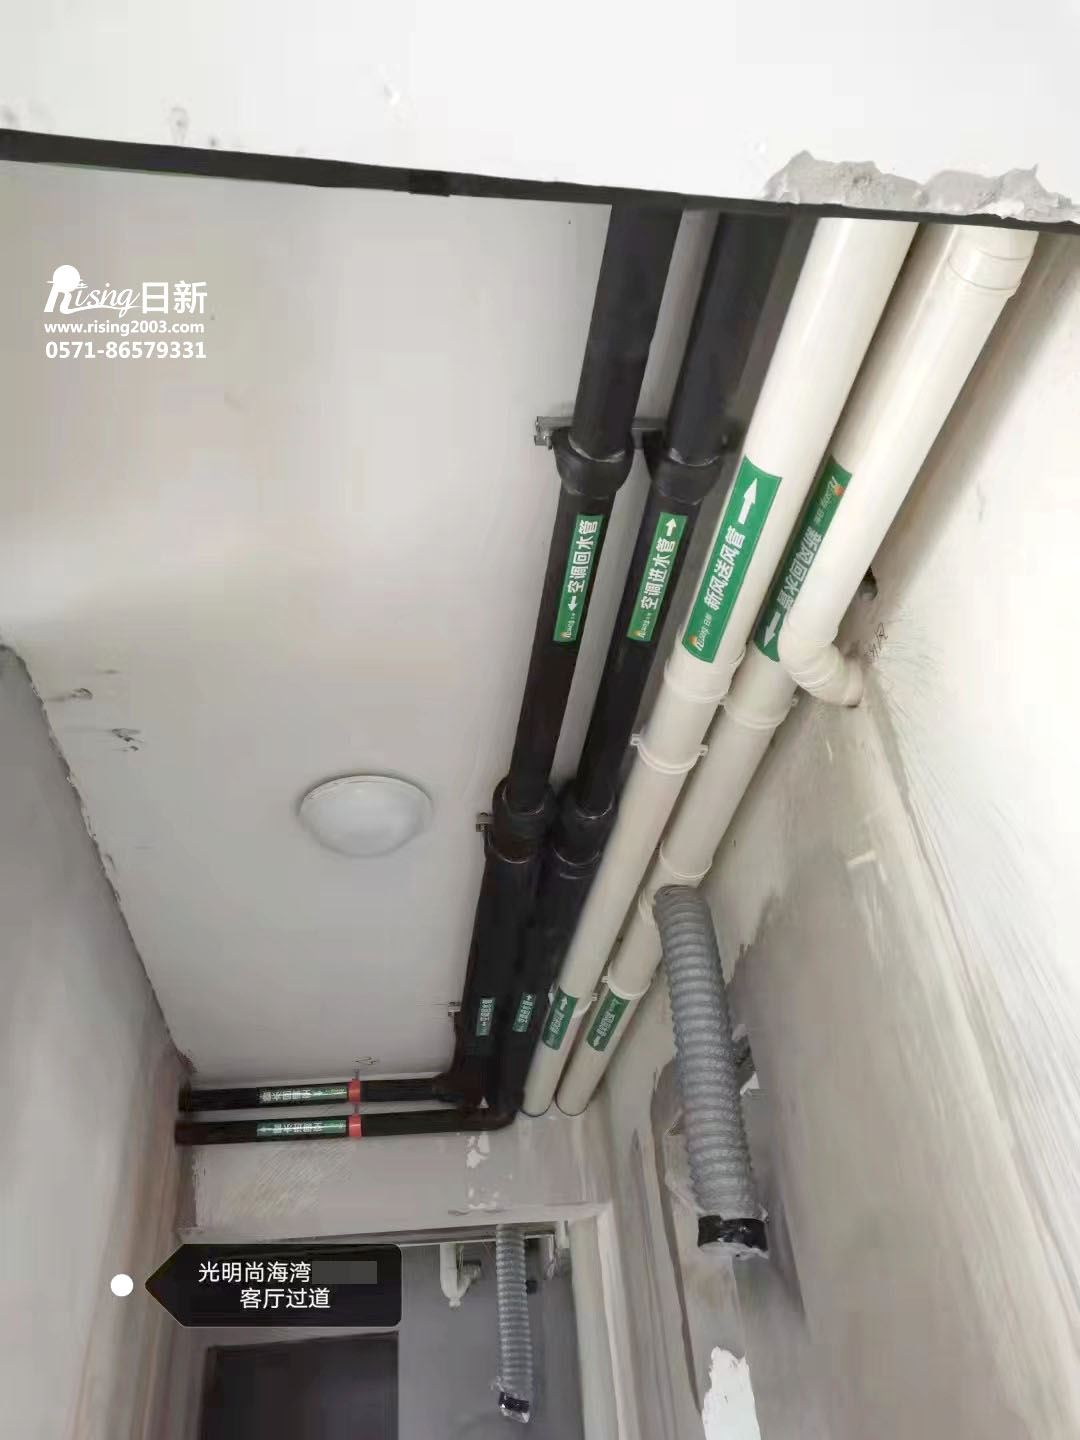 光明尚海湾别墅风冷热泵系统B项目空调阶段【日新环境】